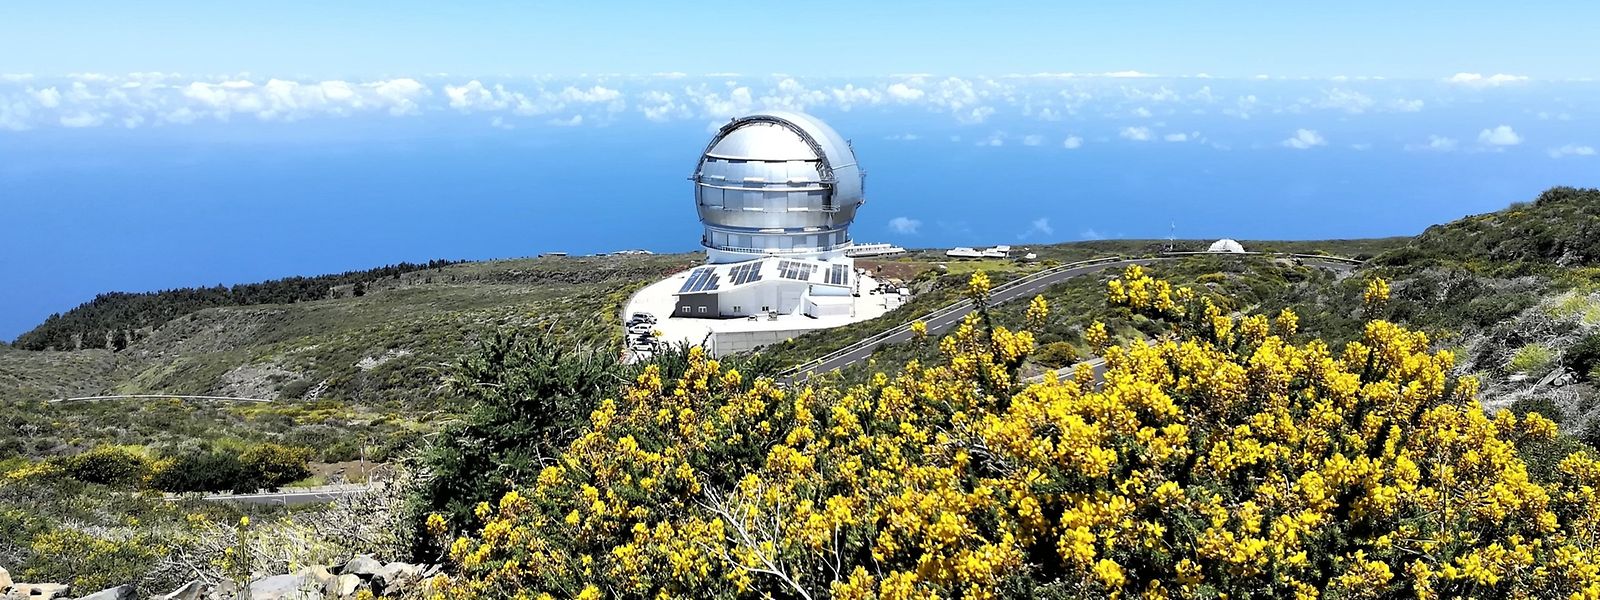 Auf dem höchsten Punkt des Berges befindet sich das größte Spiegelteleskop der nördlichen Hemisphäre: das Grantecan (GTC).